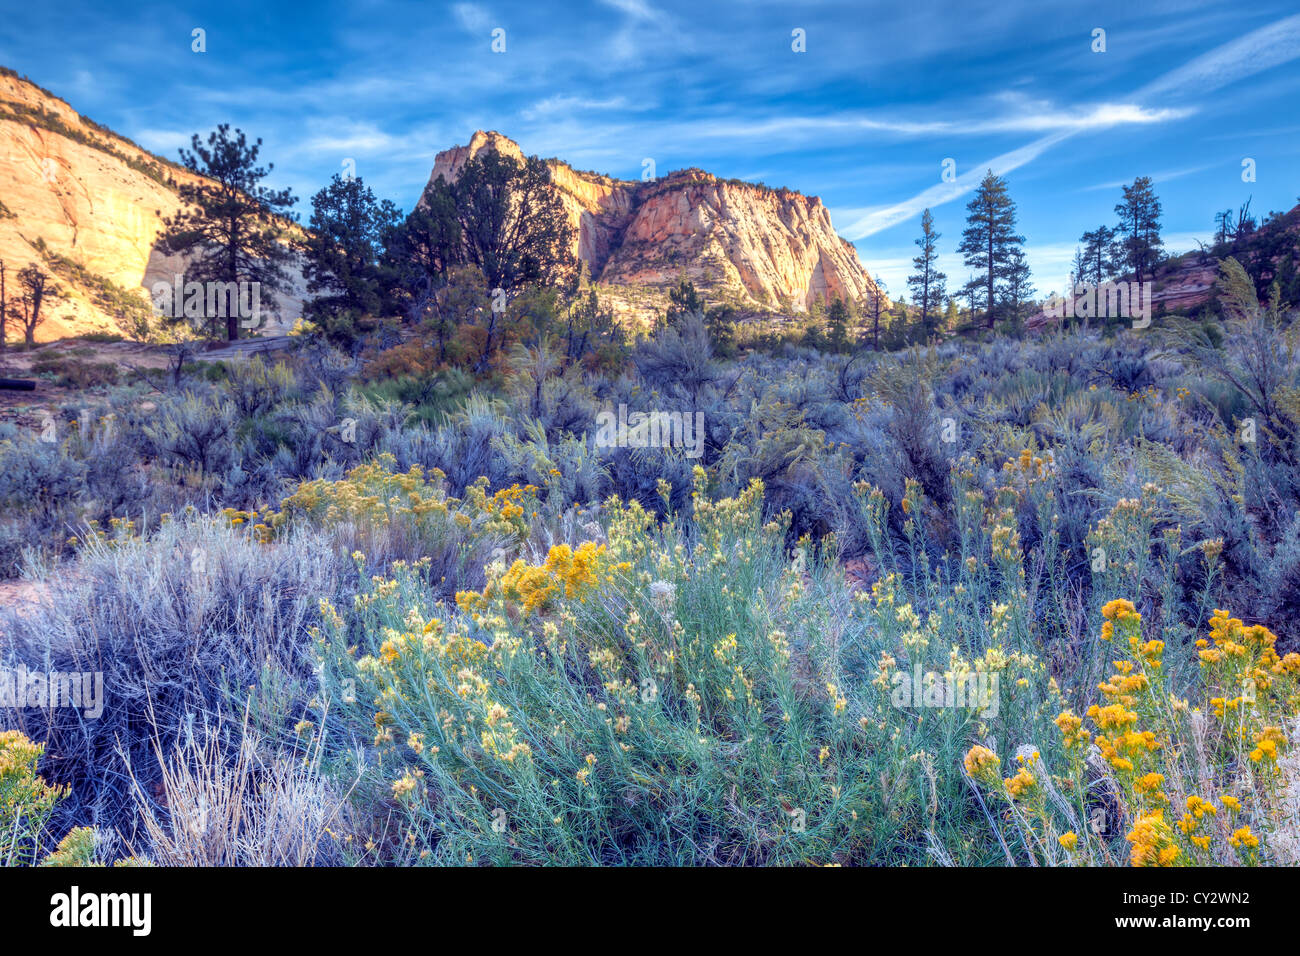 Zion National Park est situé dans le sud-ouest des États-Unis, près de Springdale, en Utah Banque D'Images